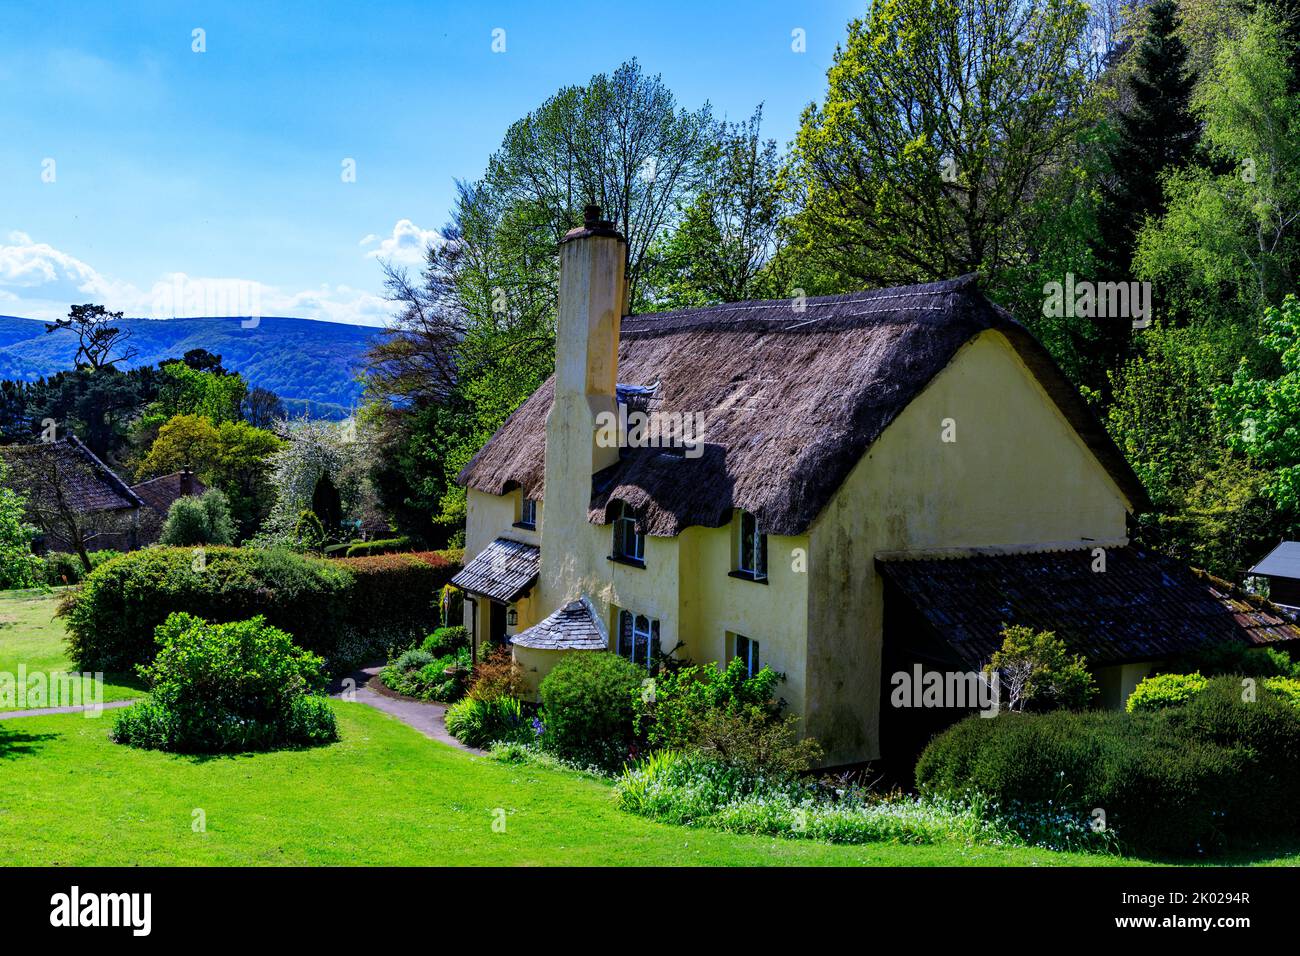 Bow Cottage est un charmant cottage de chaume à Selworthy Green sur le domaine Holnicote, Somerset, Angleterre, Royaume-Uni Banque D'Images